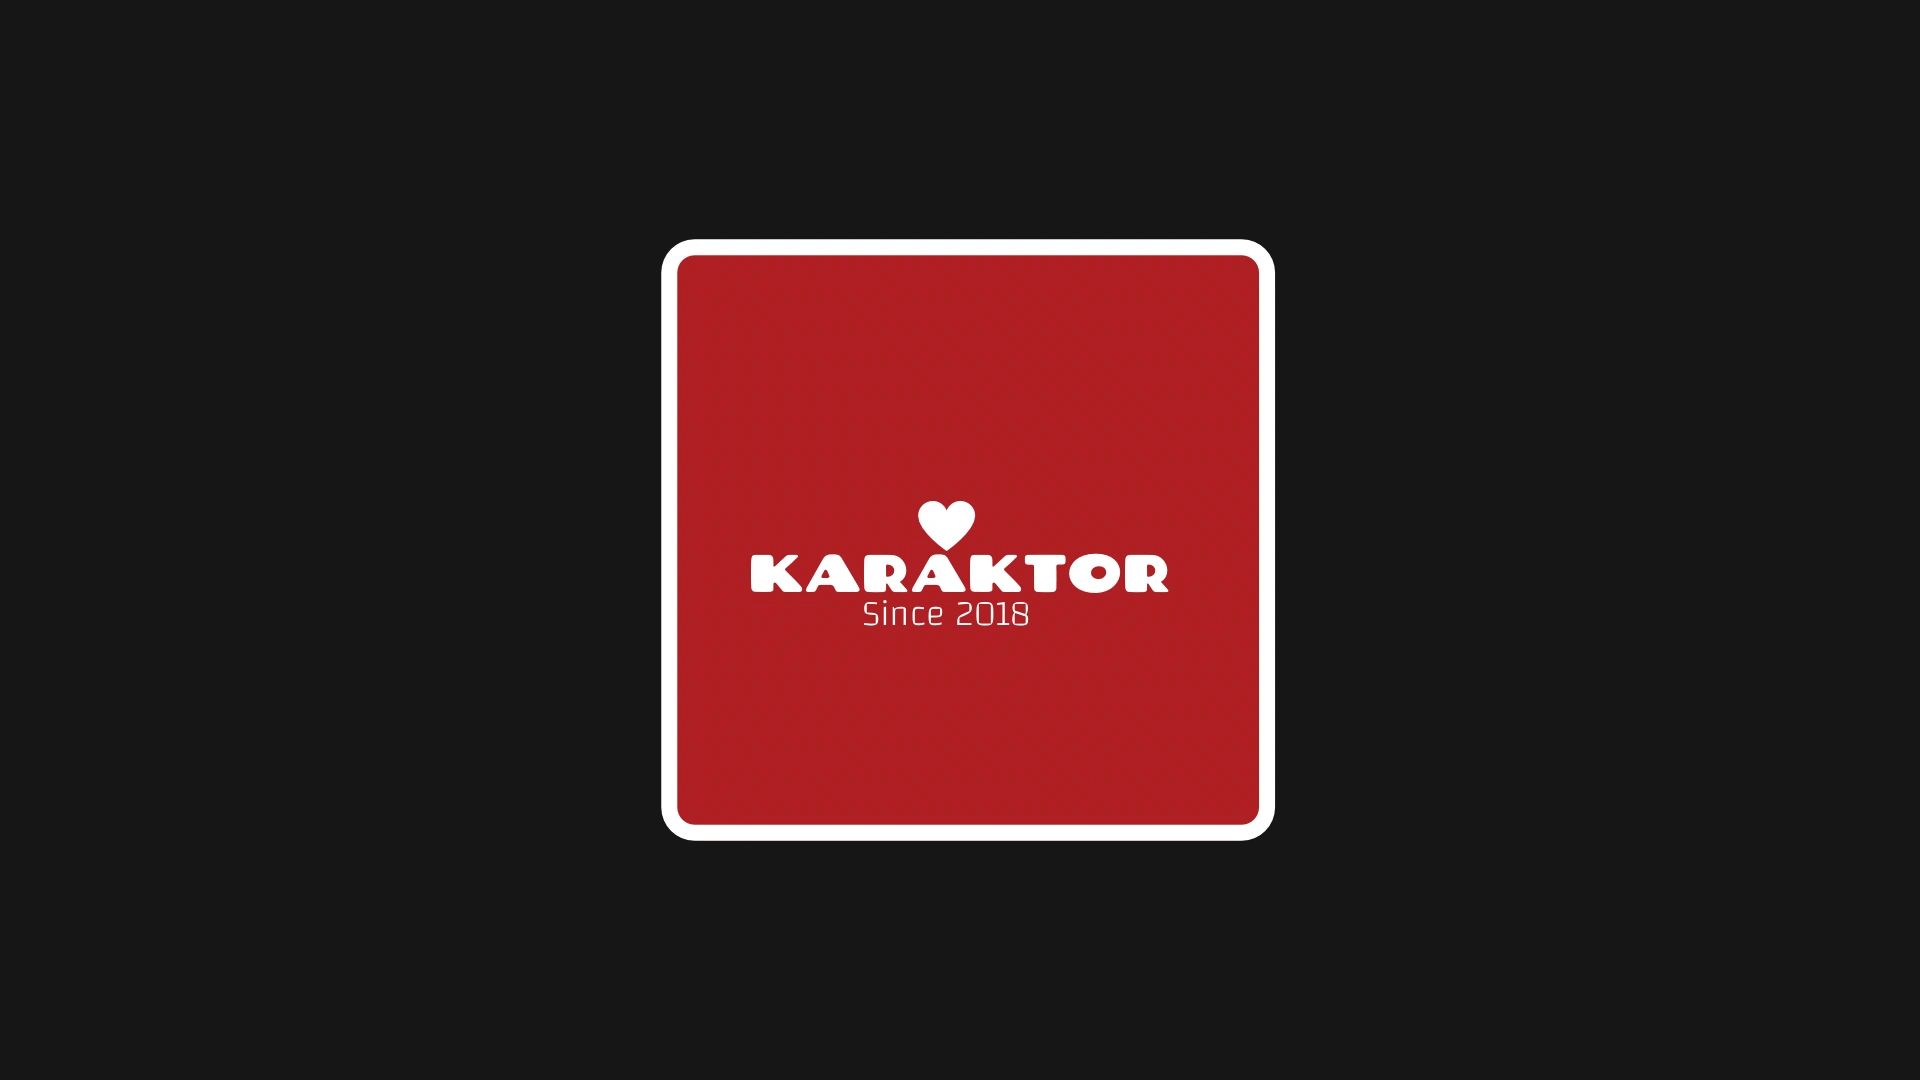 KARAKTOR brand by
SAG-e Actor/ Model/ Singer
BART DE MEIRSMAN 
IMDB.me/bartdemeirsman